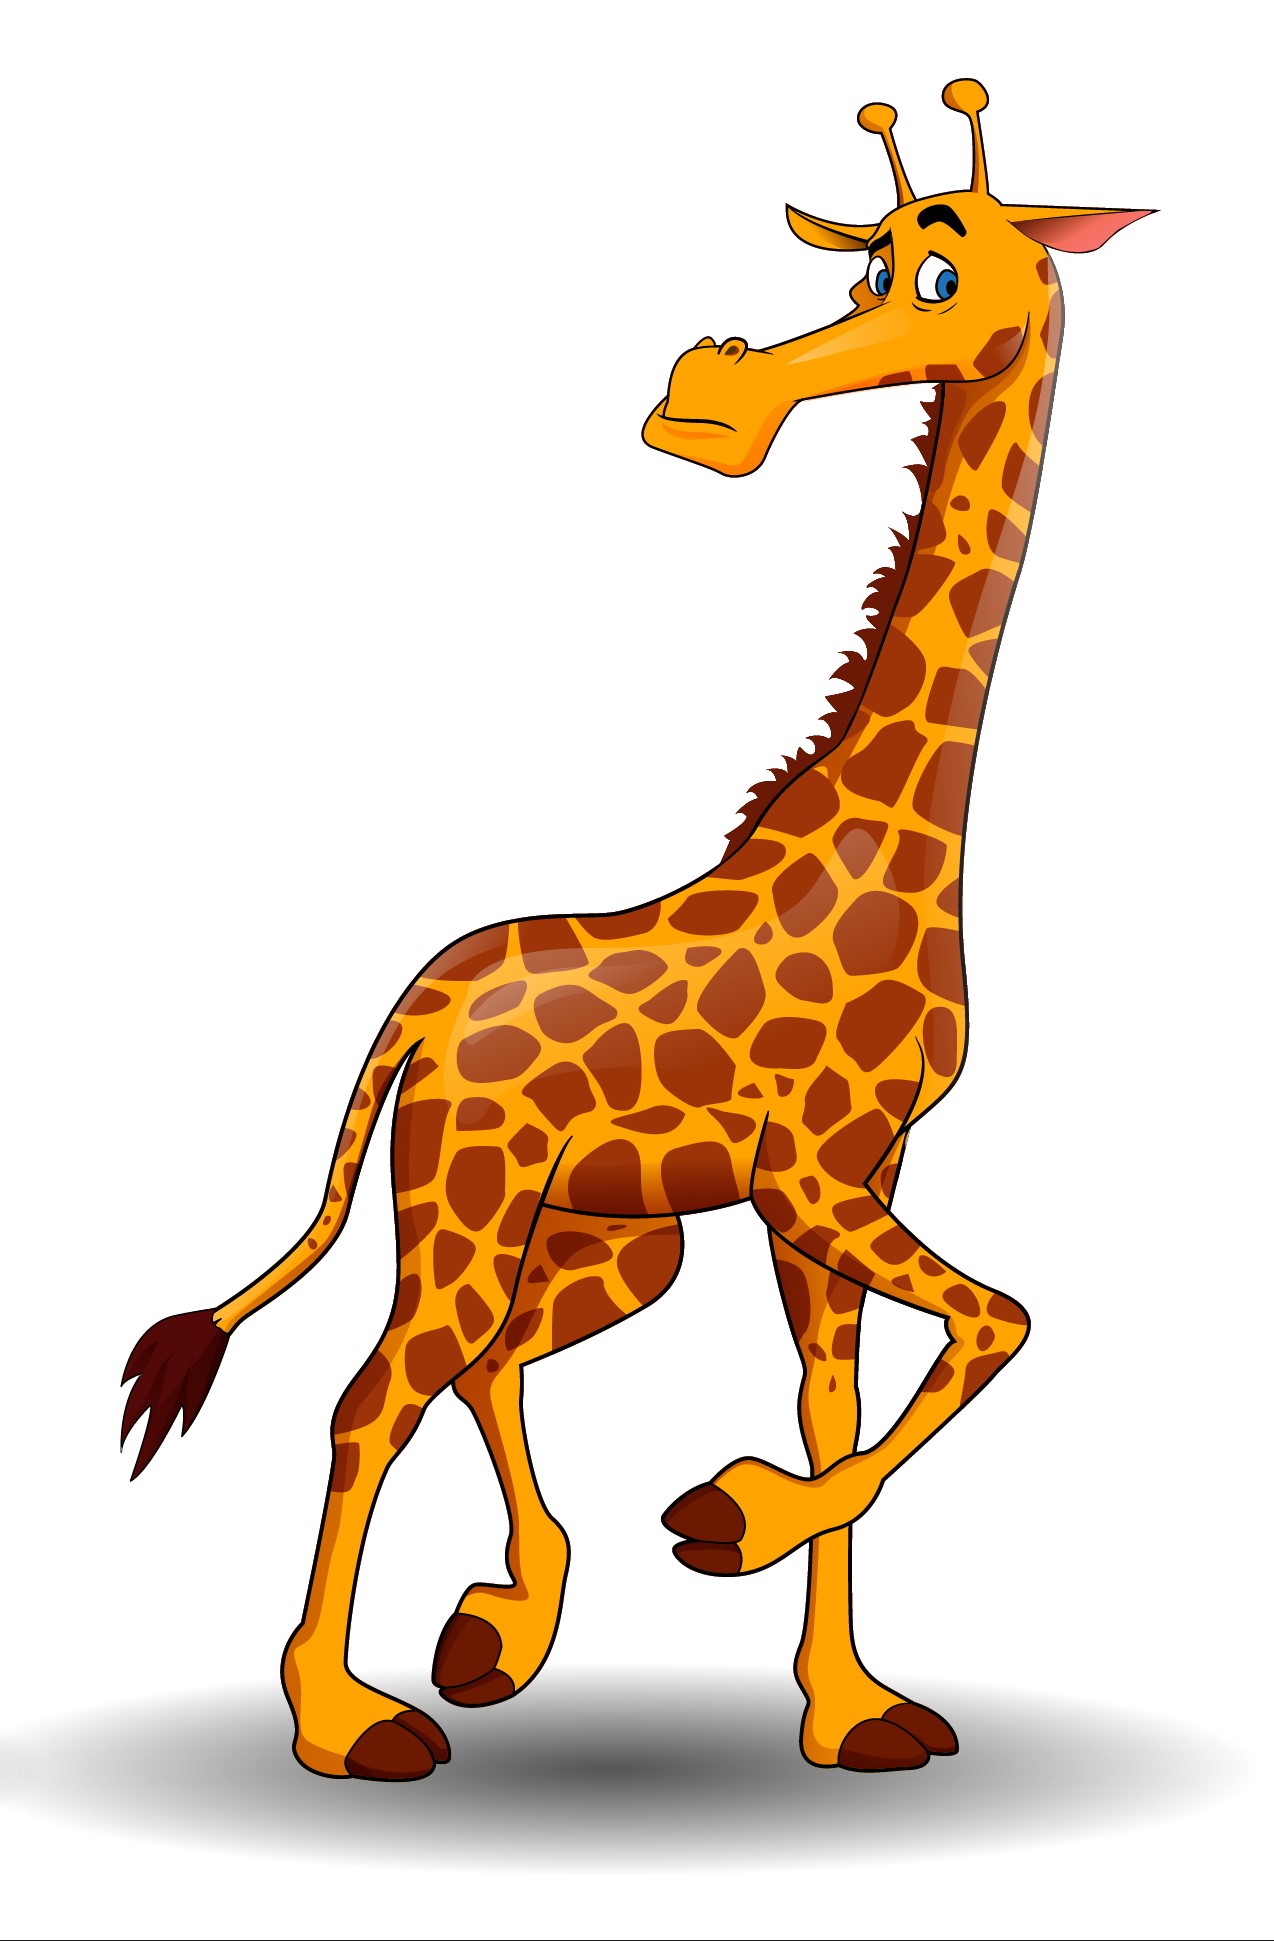 Образец раскрашенной картинки жираф с поднятым копытом